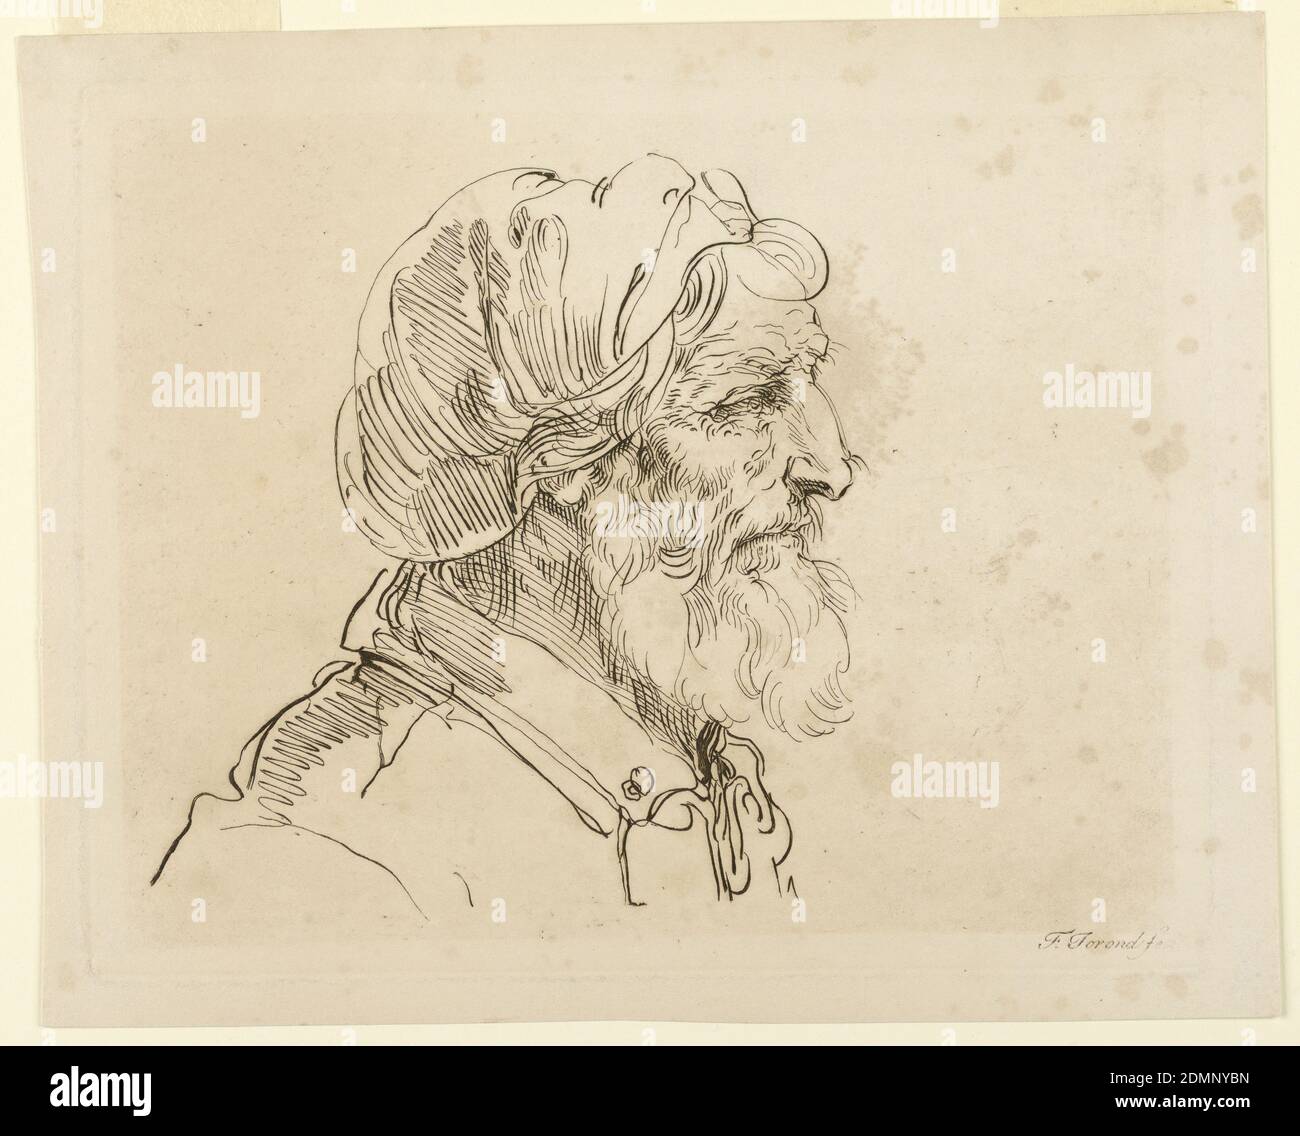 Cabeza de un hombre, F. Torond, Inglés, grabado en tinta marrón sobre papel  blanco, el hombre, visto en el perfil, se enfrenta a la derecha. Lleva una  cubierta de tela, y tiene